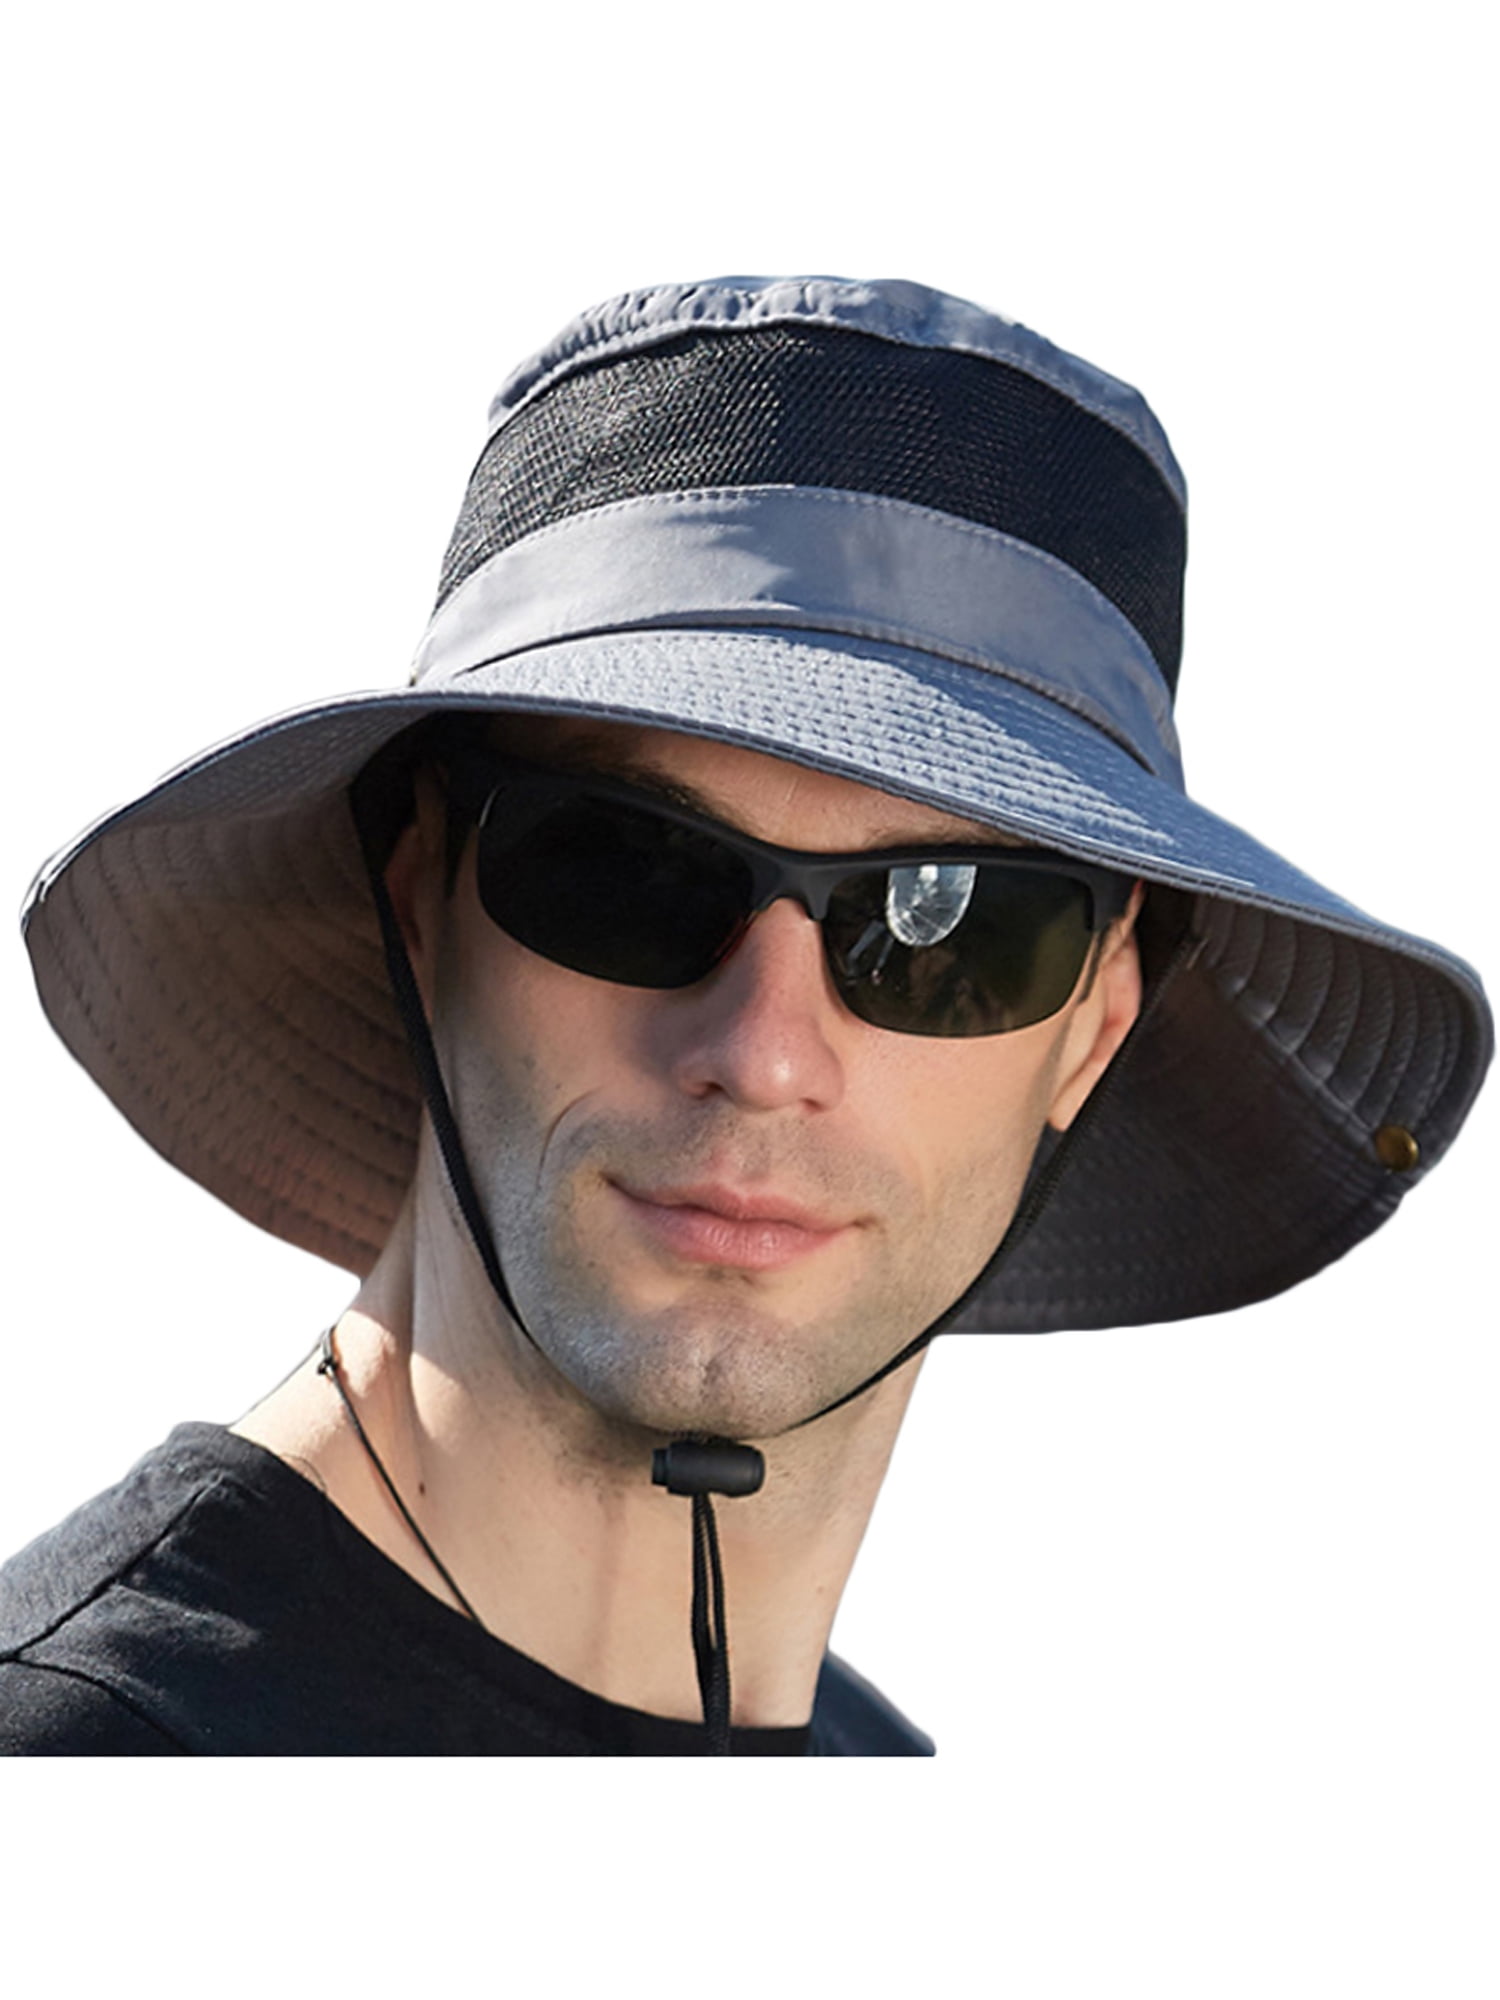 UPF 50 Sun Hat Bucket Cargo Safari Bush Boonie Summer Fishing Hat Mens Woman's 